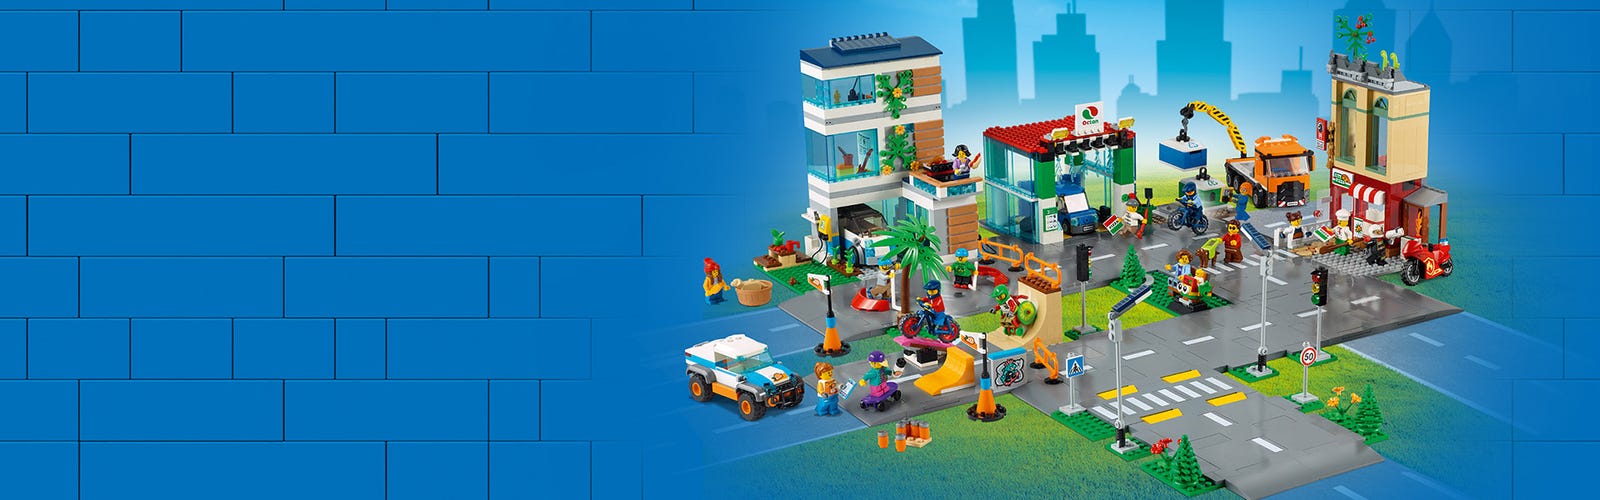 LEGO Skate Park Set 60290  Brick Owl - LEGO Marketplace